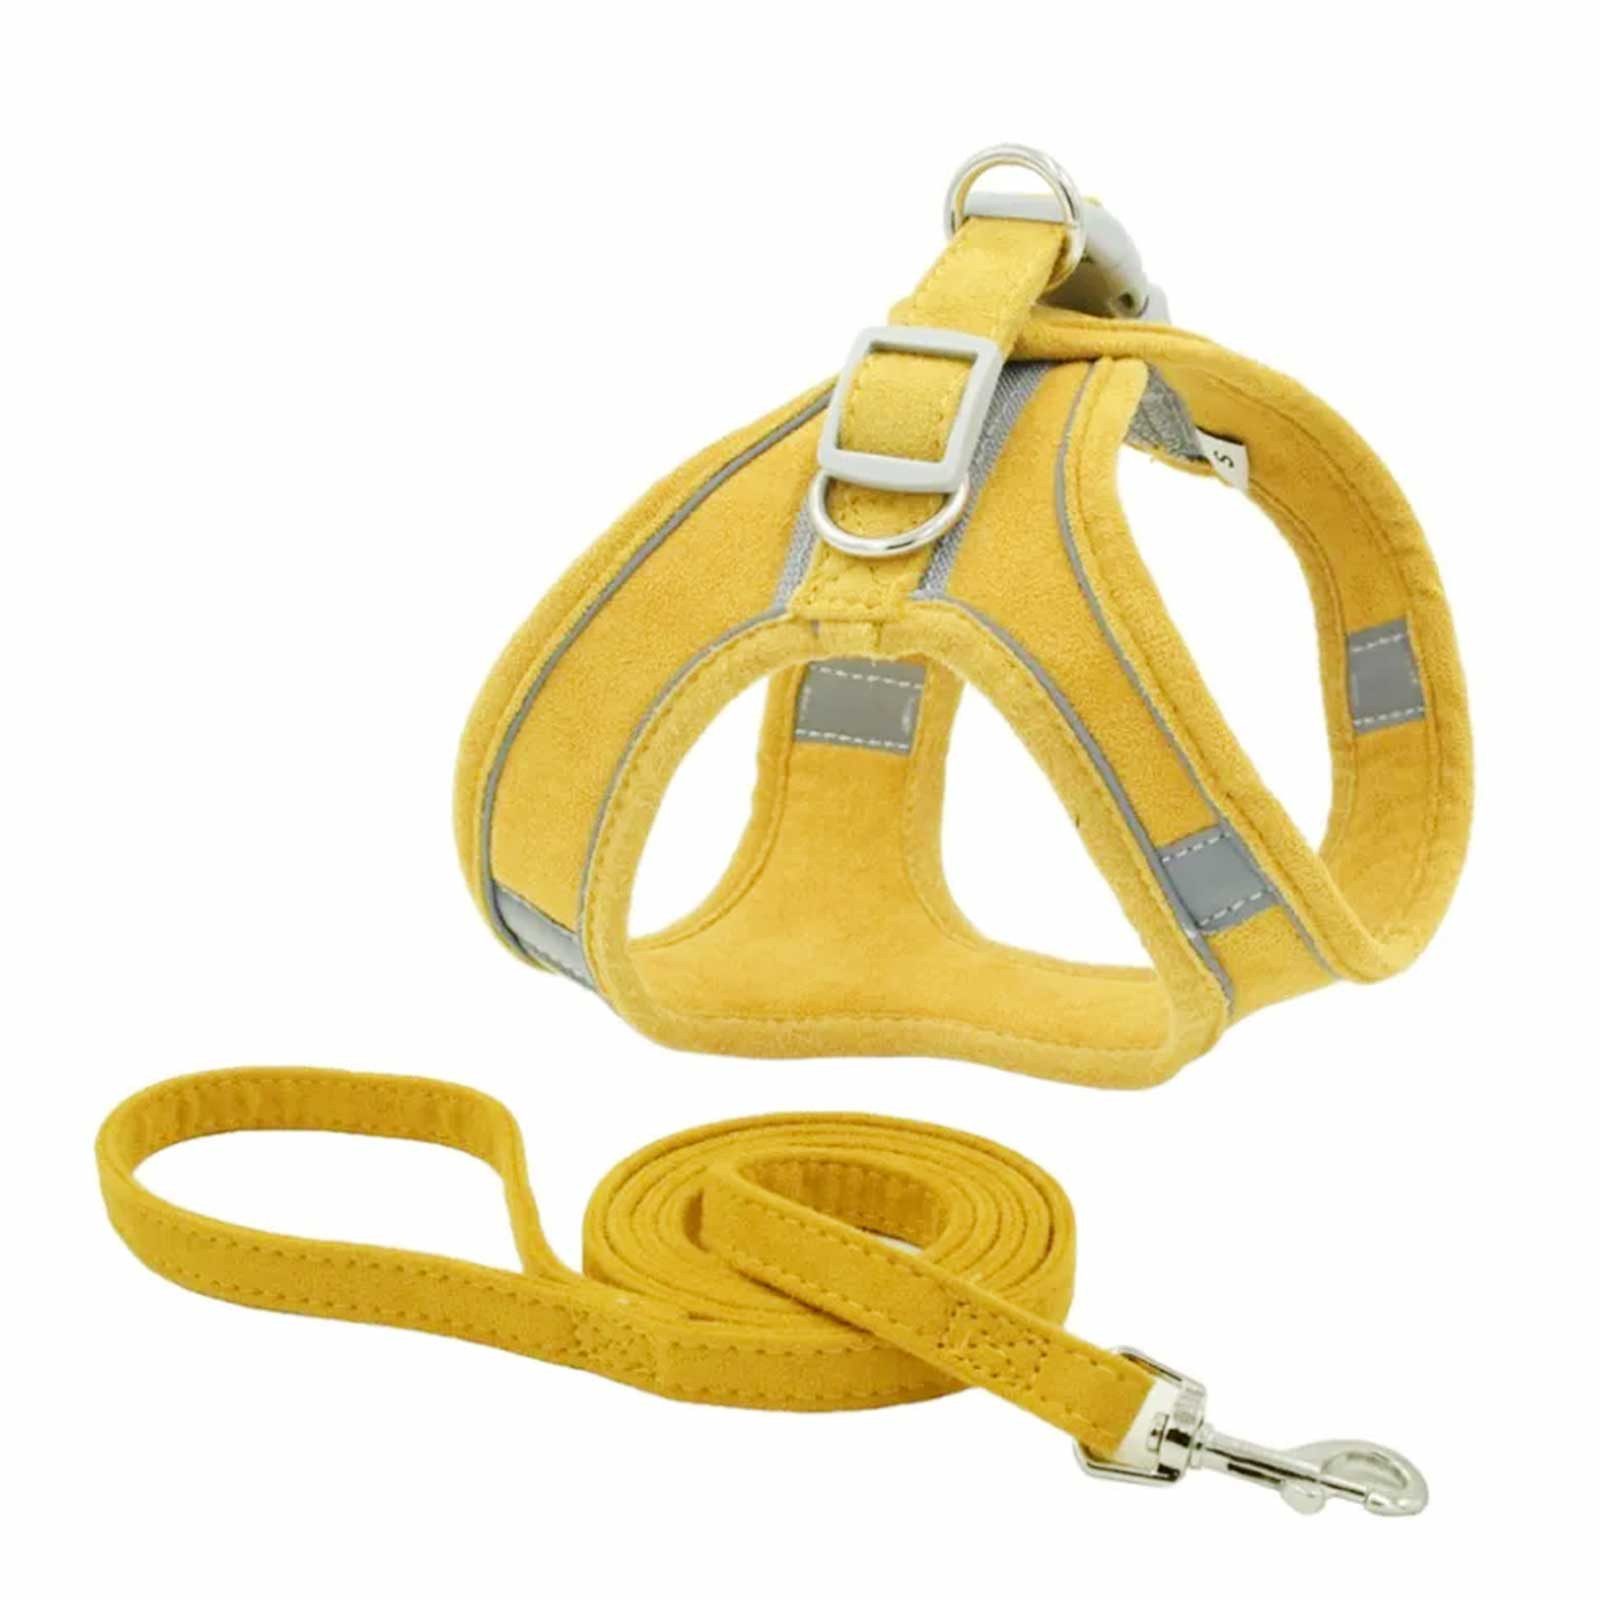 Monkimau Hunde-Geschirr Hunde Geschirr Set mit Leine - XL in gelb